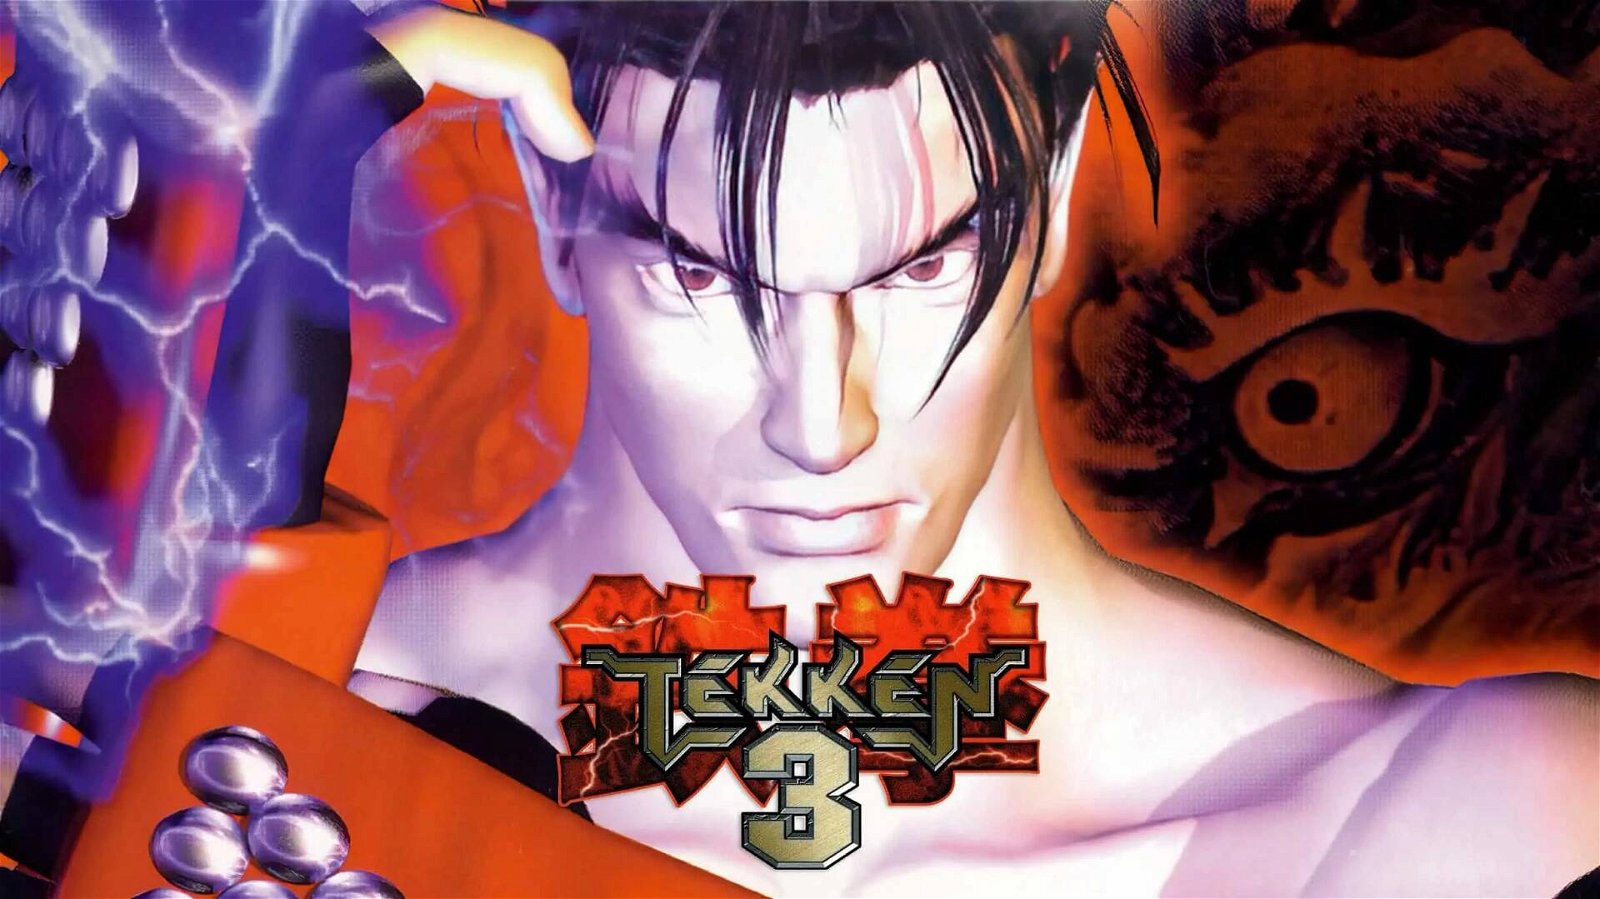 Tekken 3 compie 25 anni: i fan festeggiano il capitolo più amato della saga picchiaduro